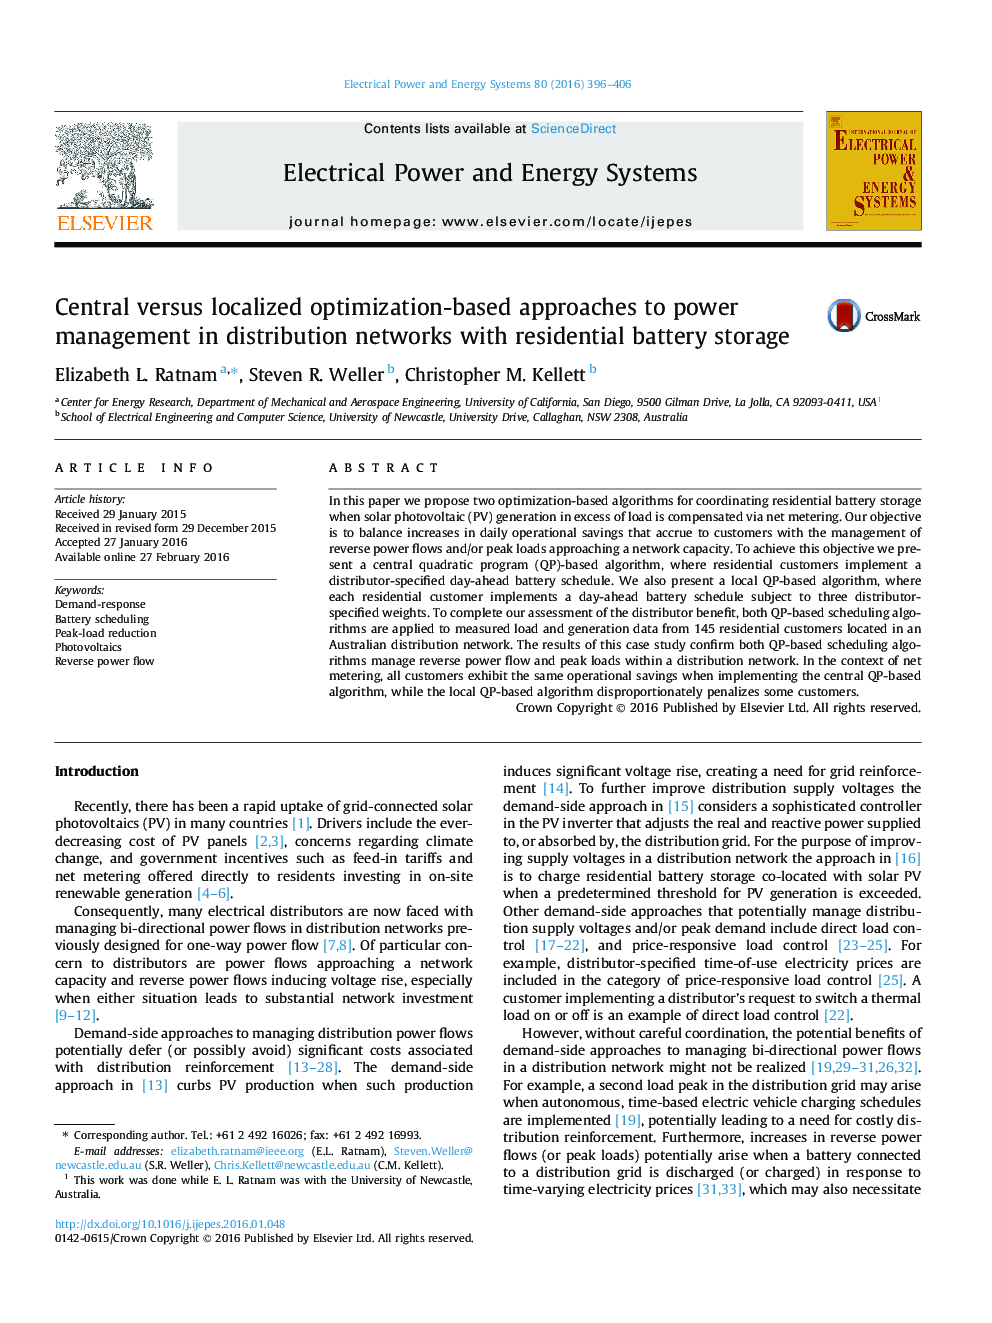 رویکرد مبتنی بر بهینه سازی مرکزی در مقابل مدیریت قدرت در شبکه های توزیع با ذخیره سازی شبکه های باتری مسکونی 